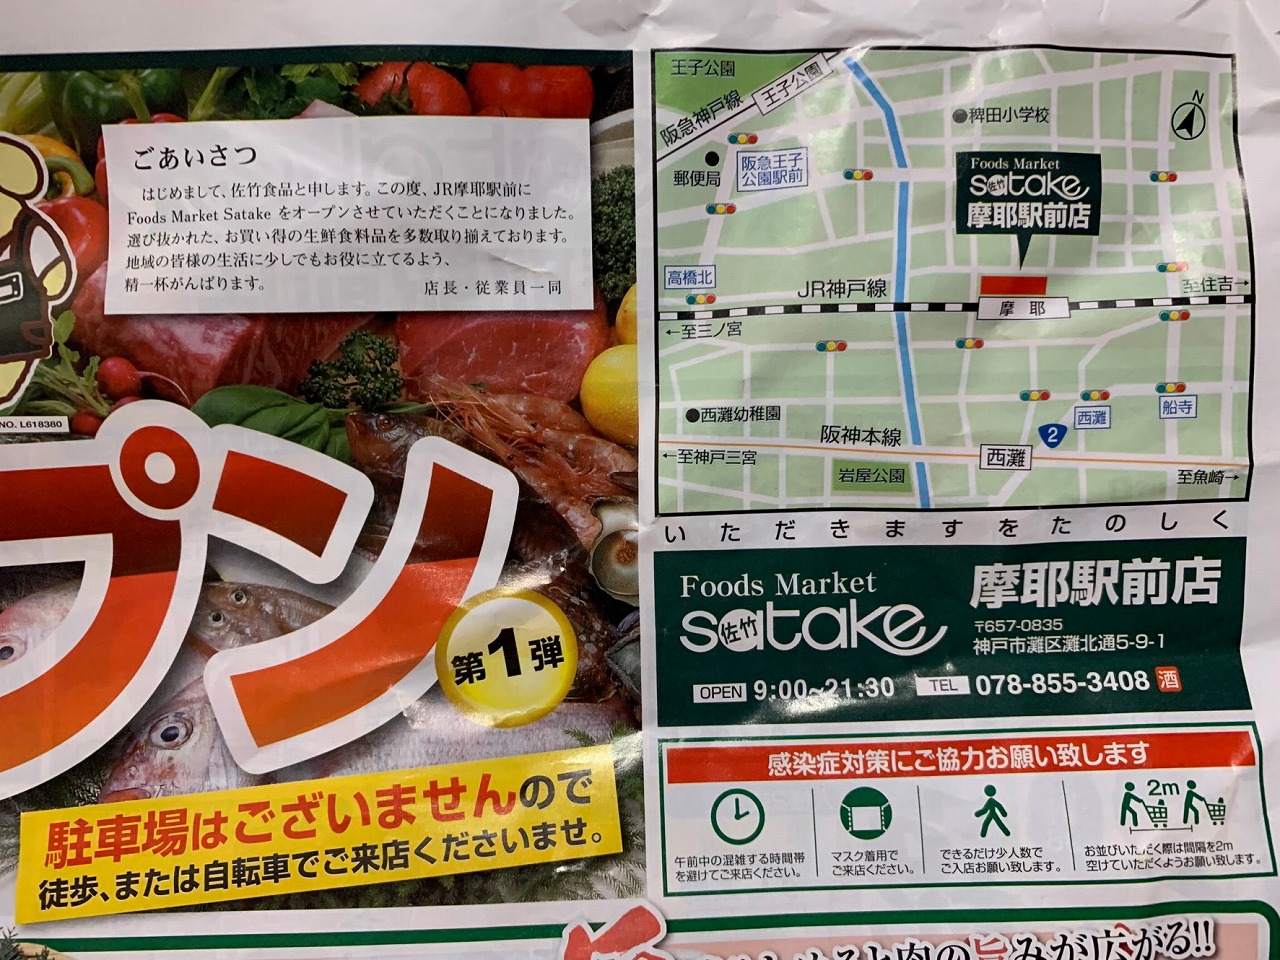 神戸市灘区 安いわ 神戸で初出店 Food Market Satake サタケ 佐竹 摩耶駅前店に行ってきました オープニングチラシはこんな感じです 号外net 神戸市灘区 東灘区